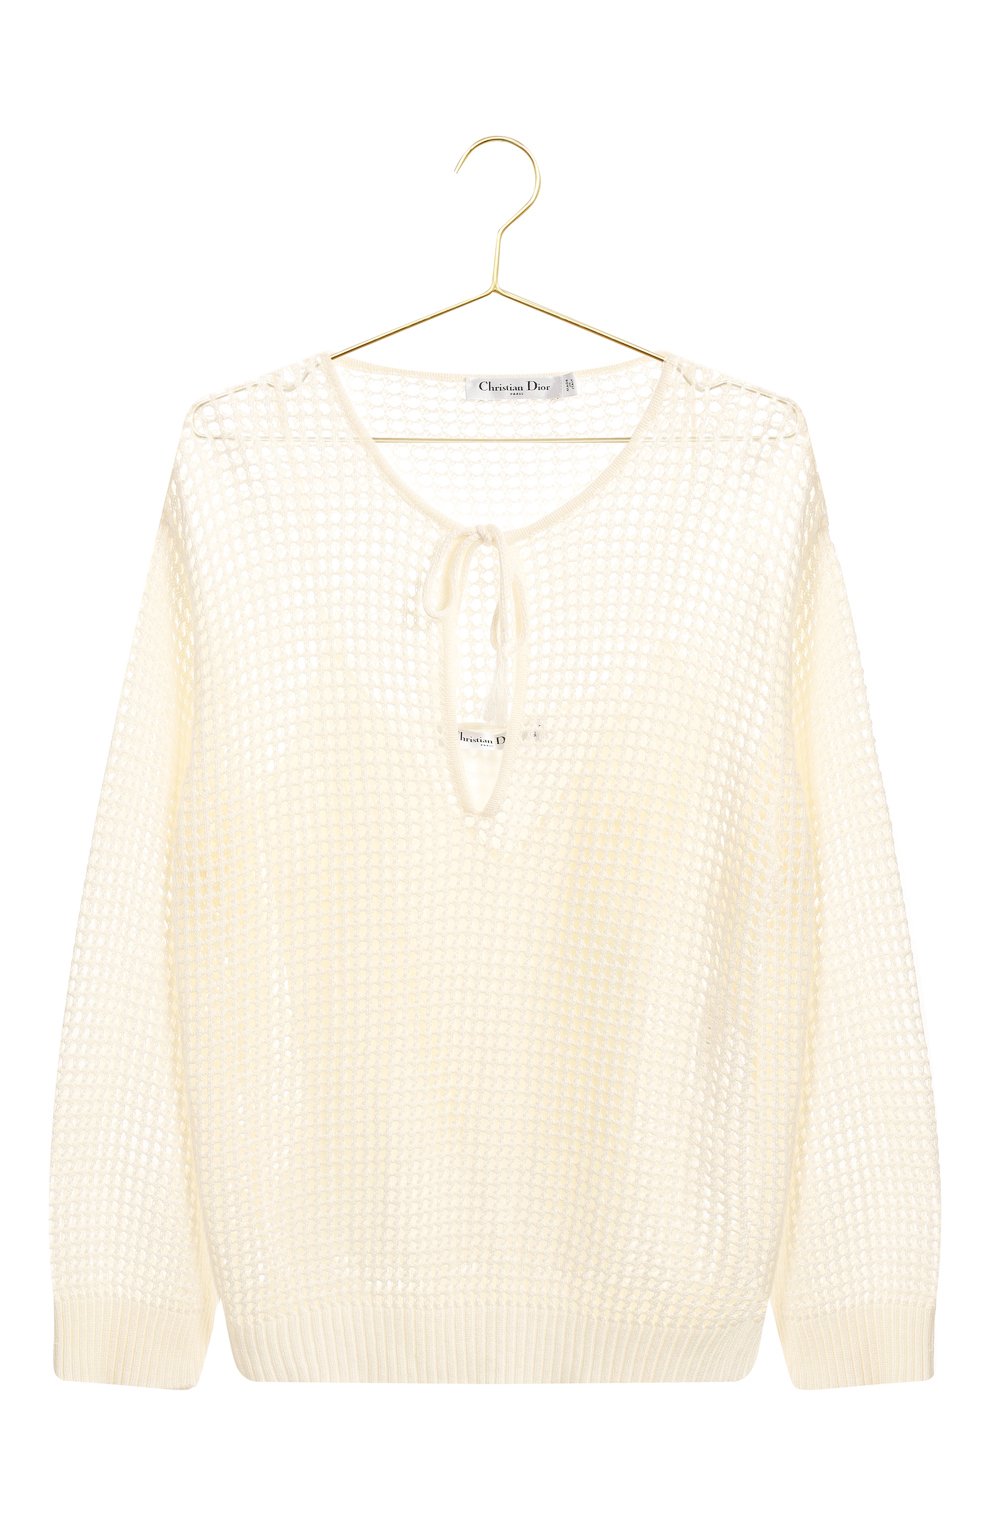 Пуловер изо льна и хлопка | Dior | Кремовый - 1